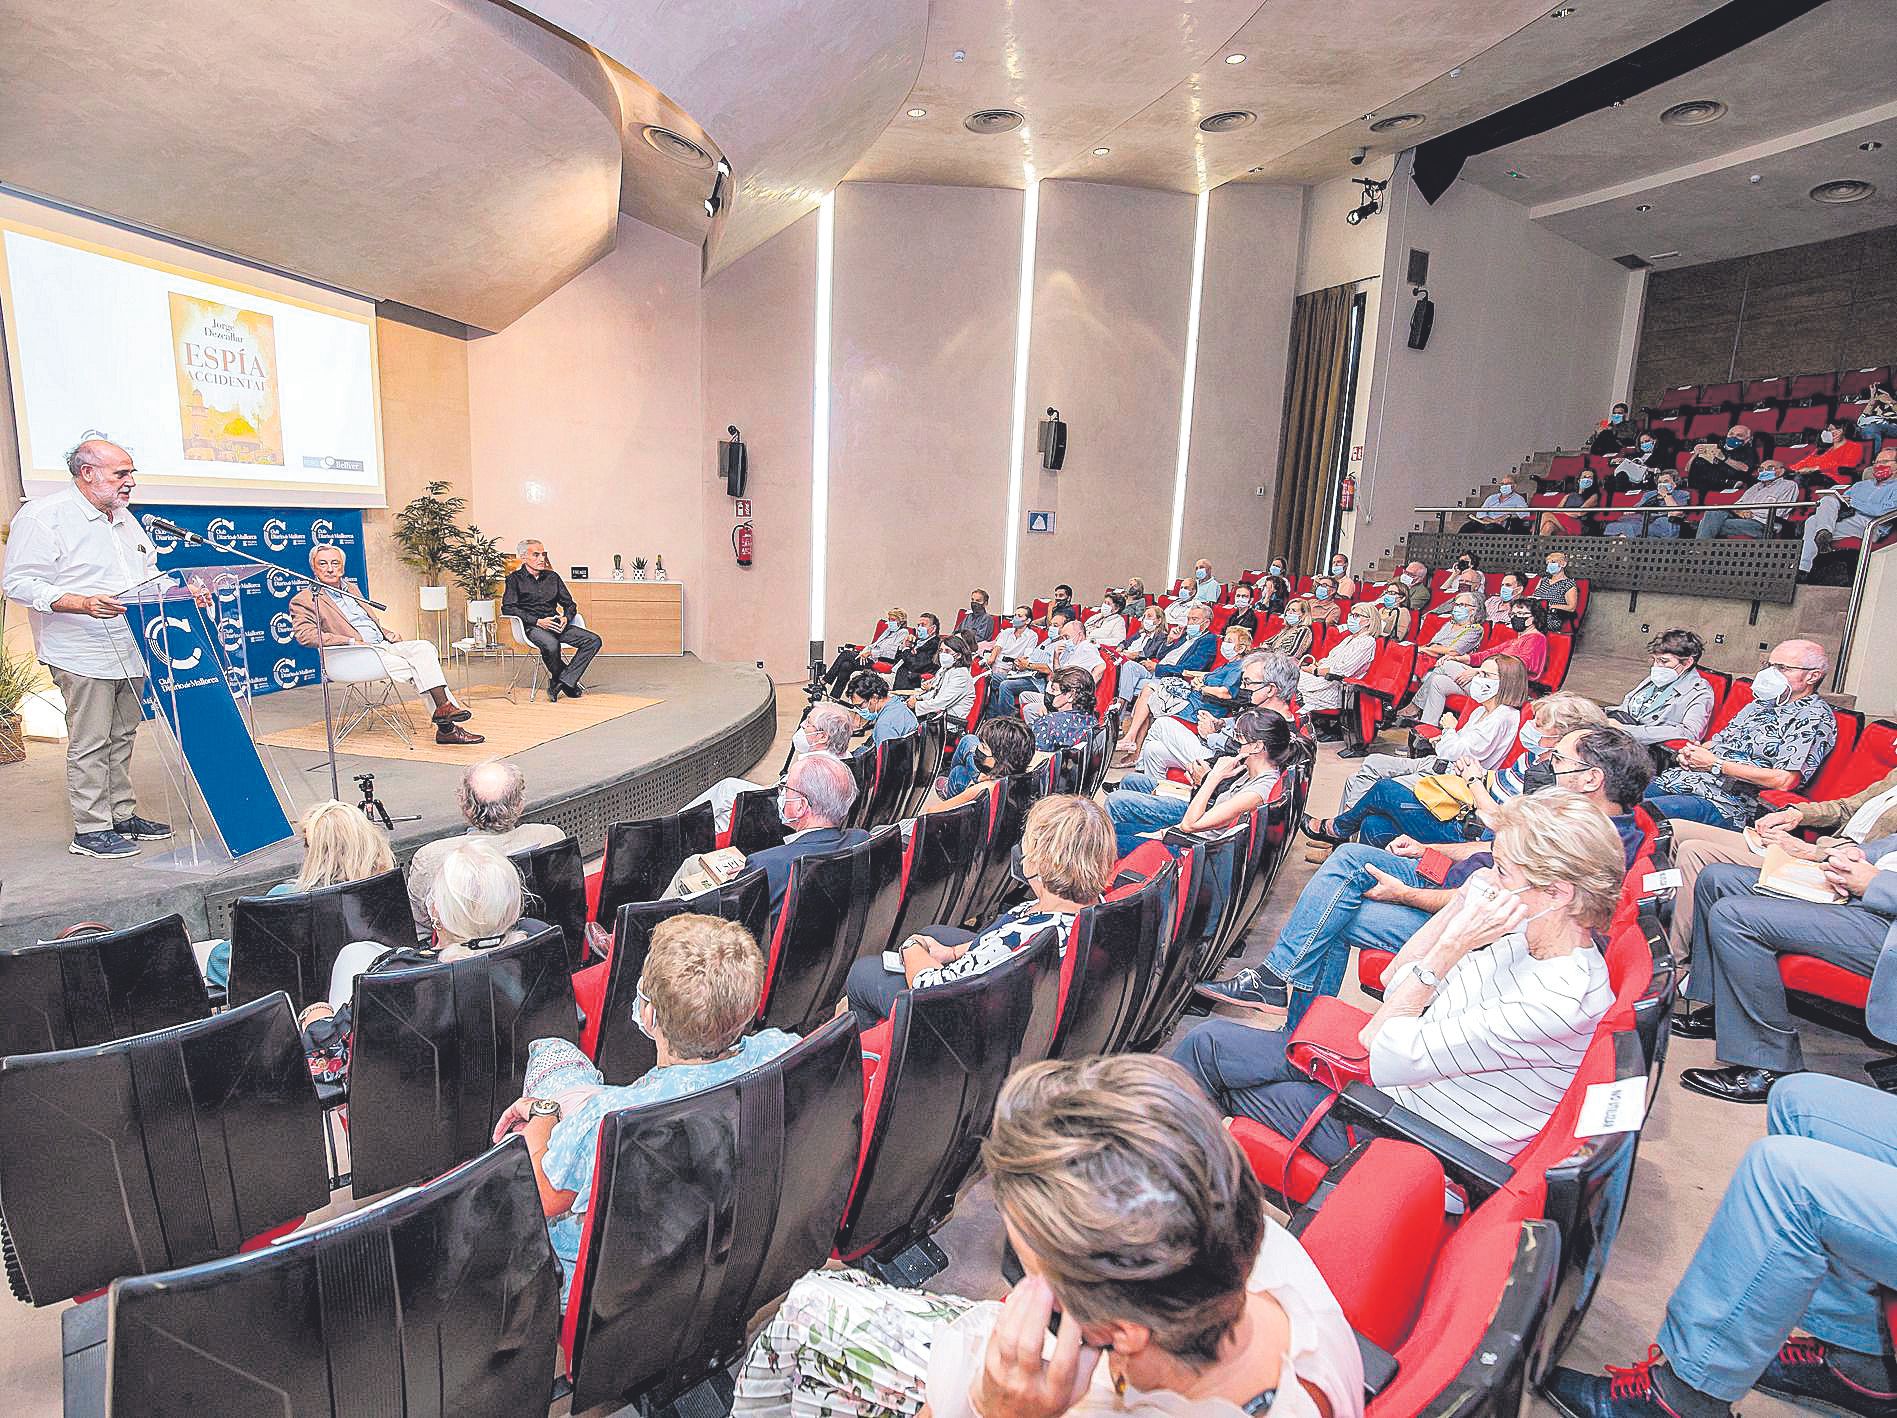 Jorge Dezcallar: «No puedes exportar democracia a unas mentalidades que  no están preparadas»